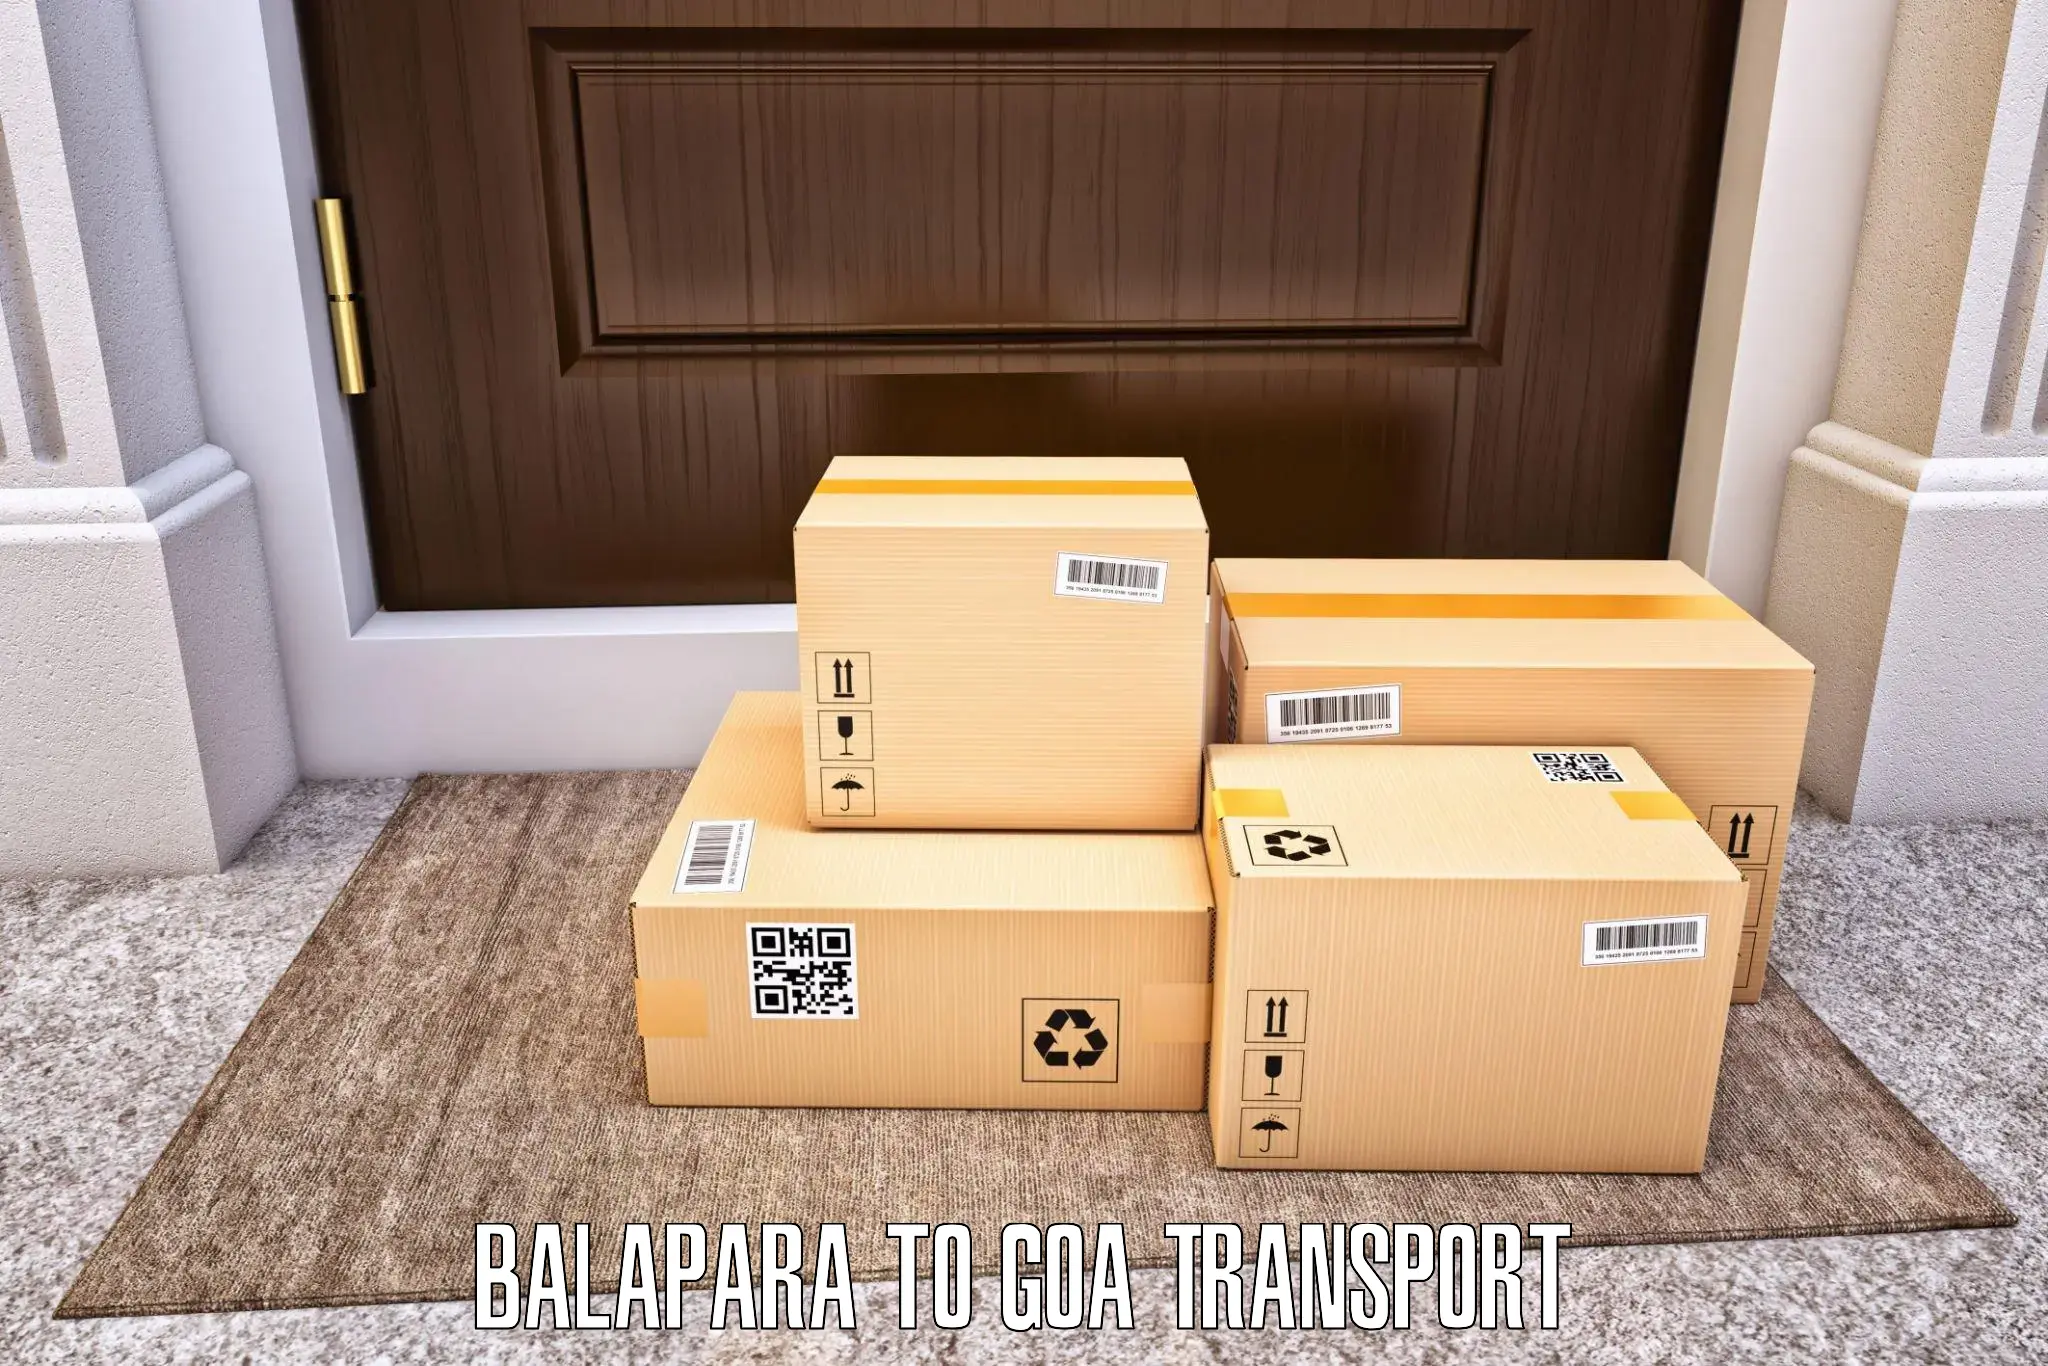 Nationwide transport services Balapara to Vasco da Gama